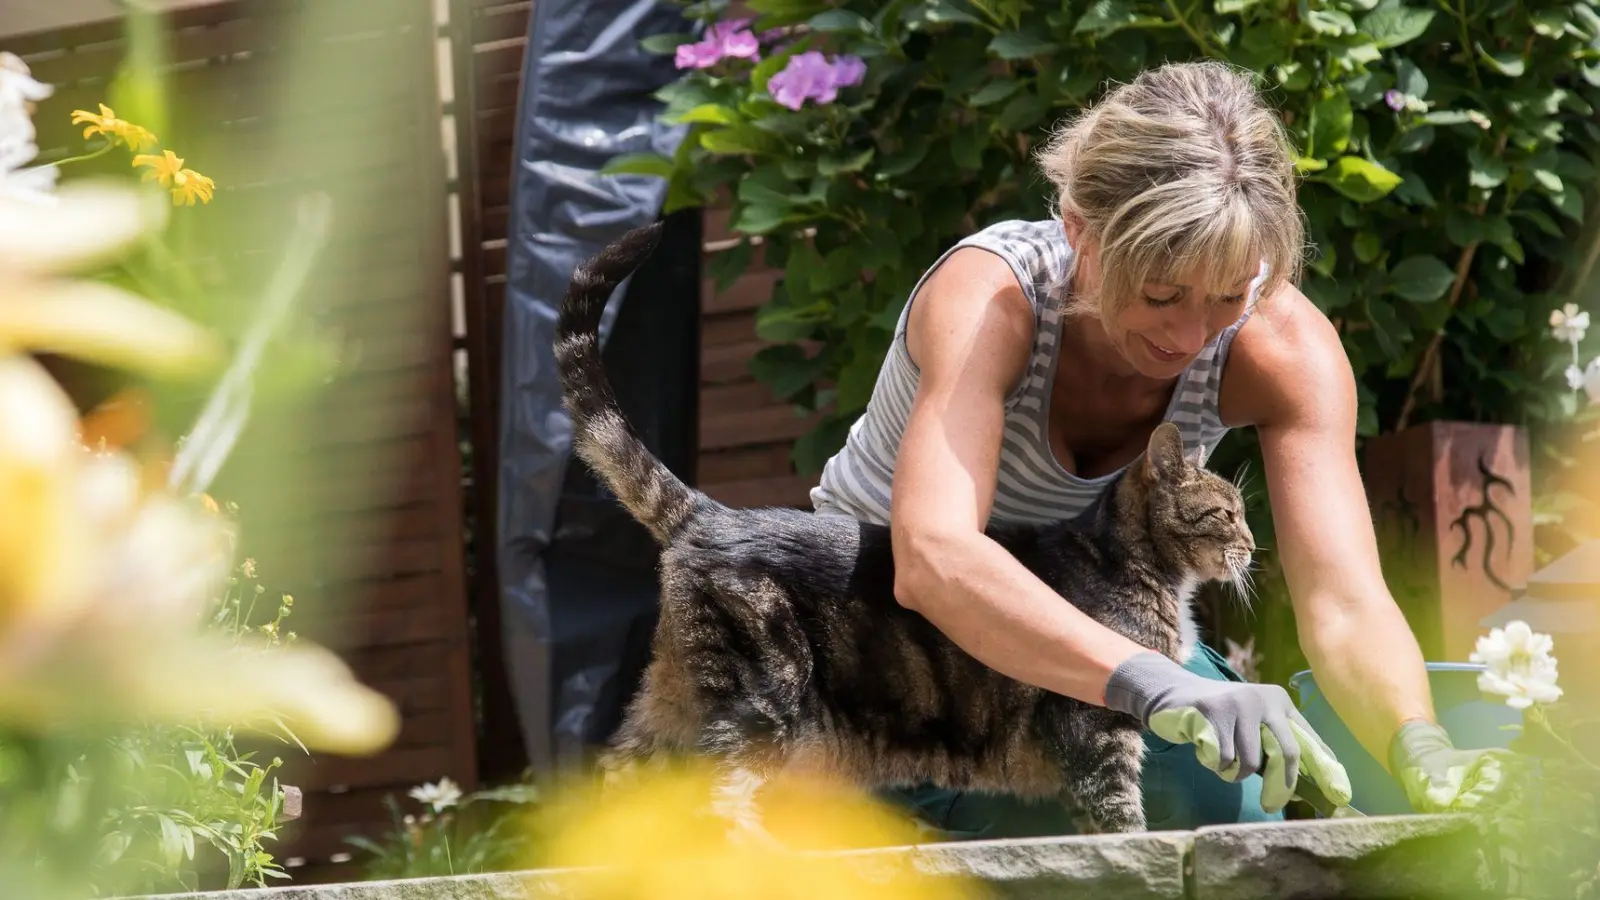 Kampf gegen Grünbelag und Wildwuchs: Mit effektiven Hausumitteln kann die Reinigung von Terrassen und Gartenwegen leicht gelingen. (Foto: Christin Klose/dpa-tmn/dpa)